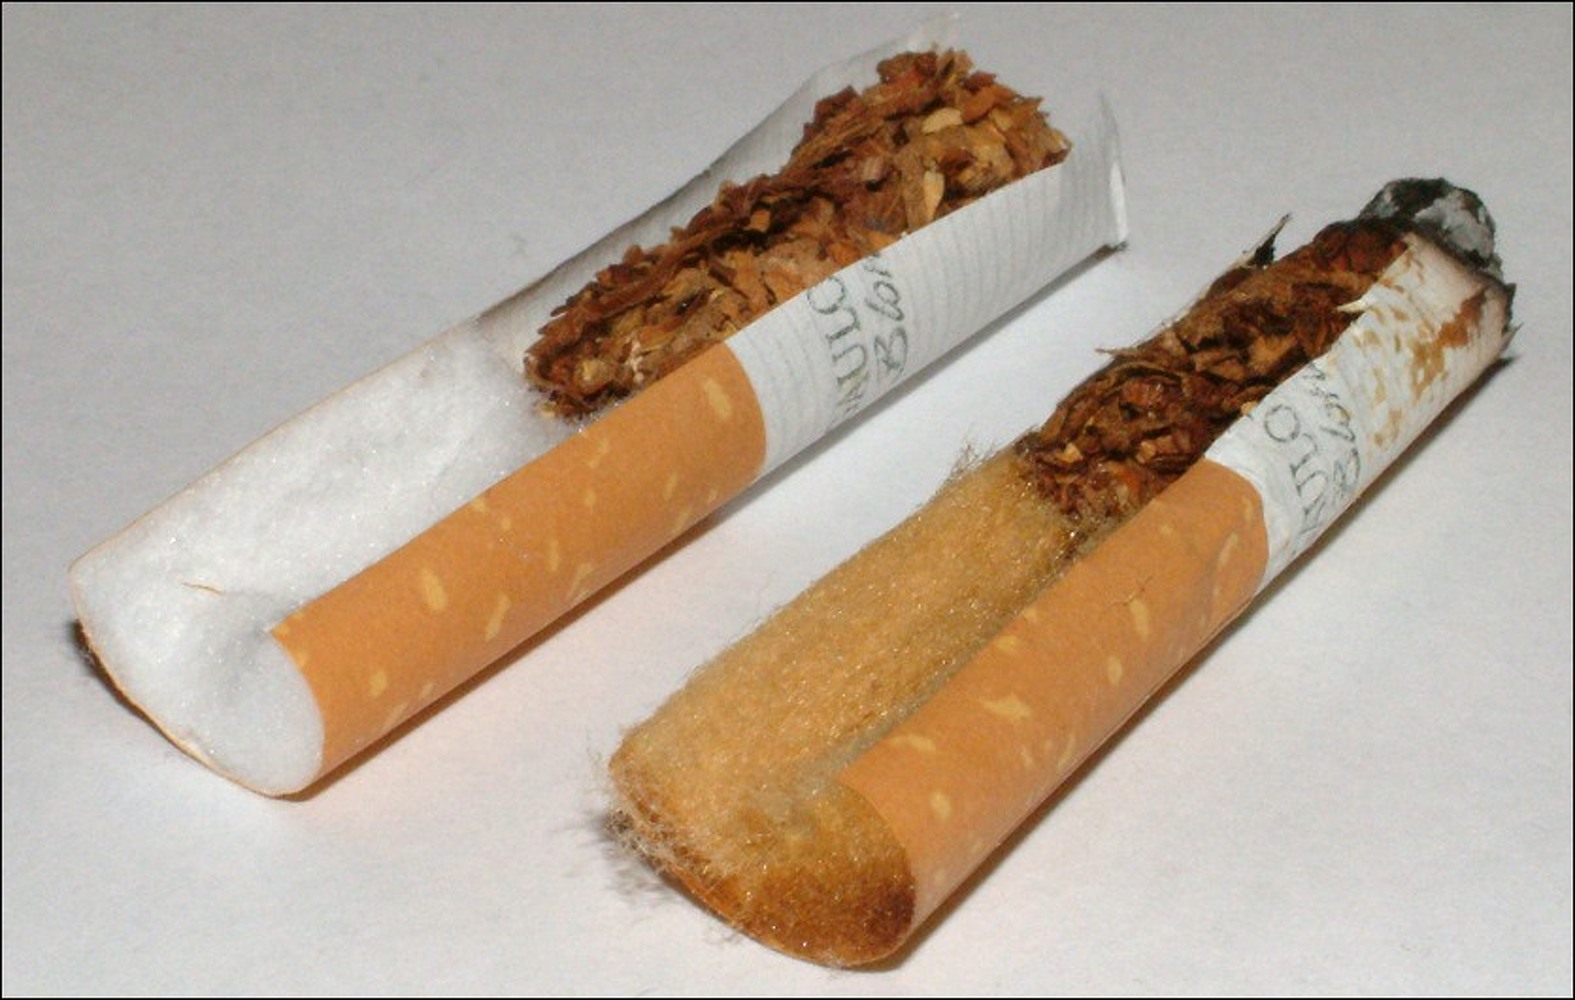 Из чего можно сделать сигарету